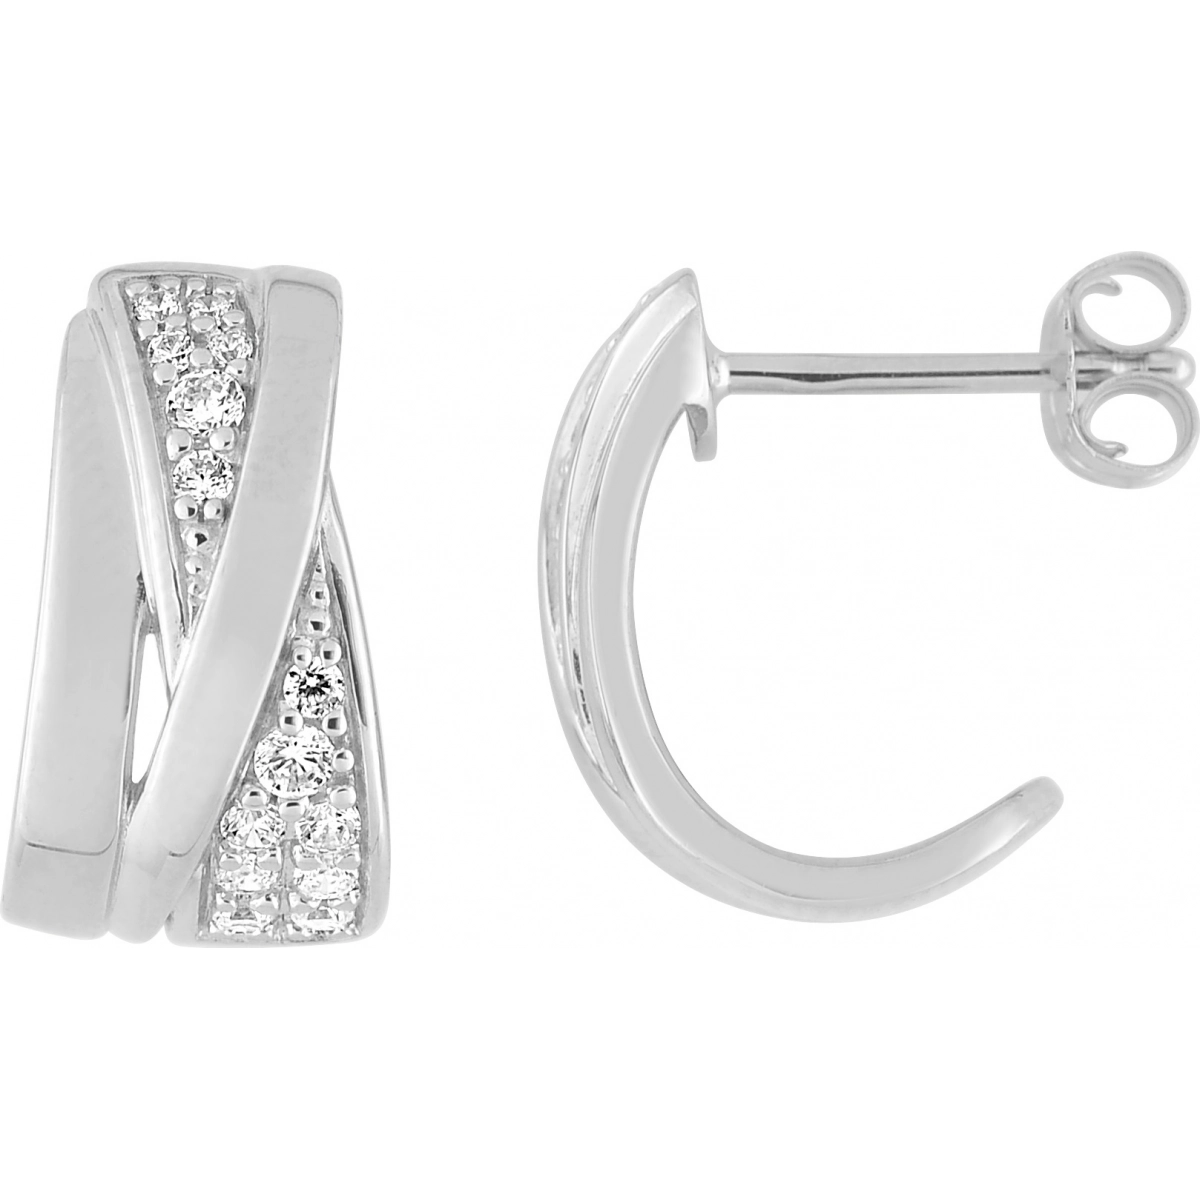 Earrings pair w. cz rh 925 Silver  Lua Blanca  335901.1.0